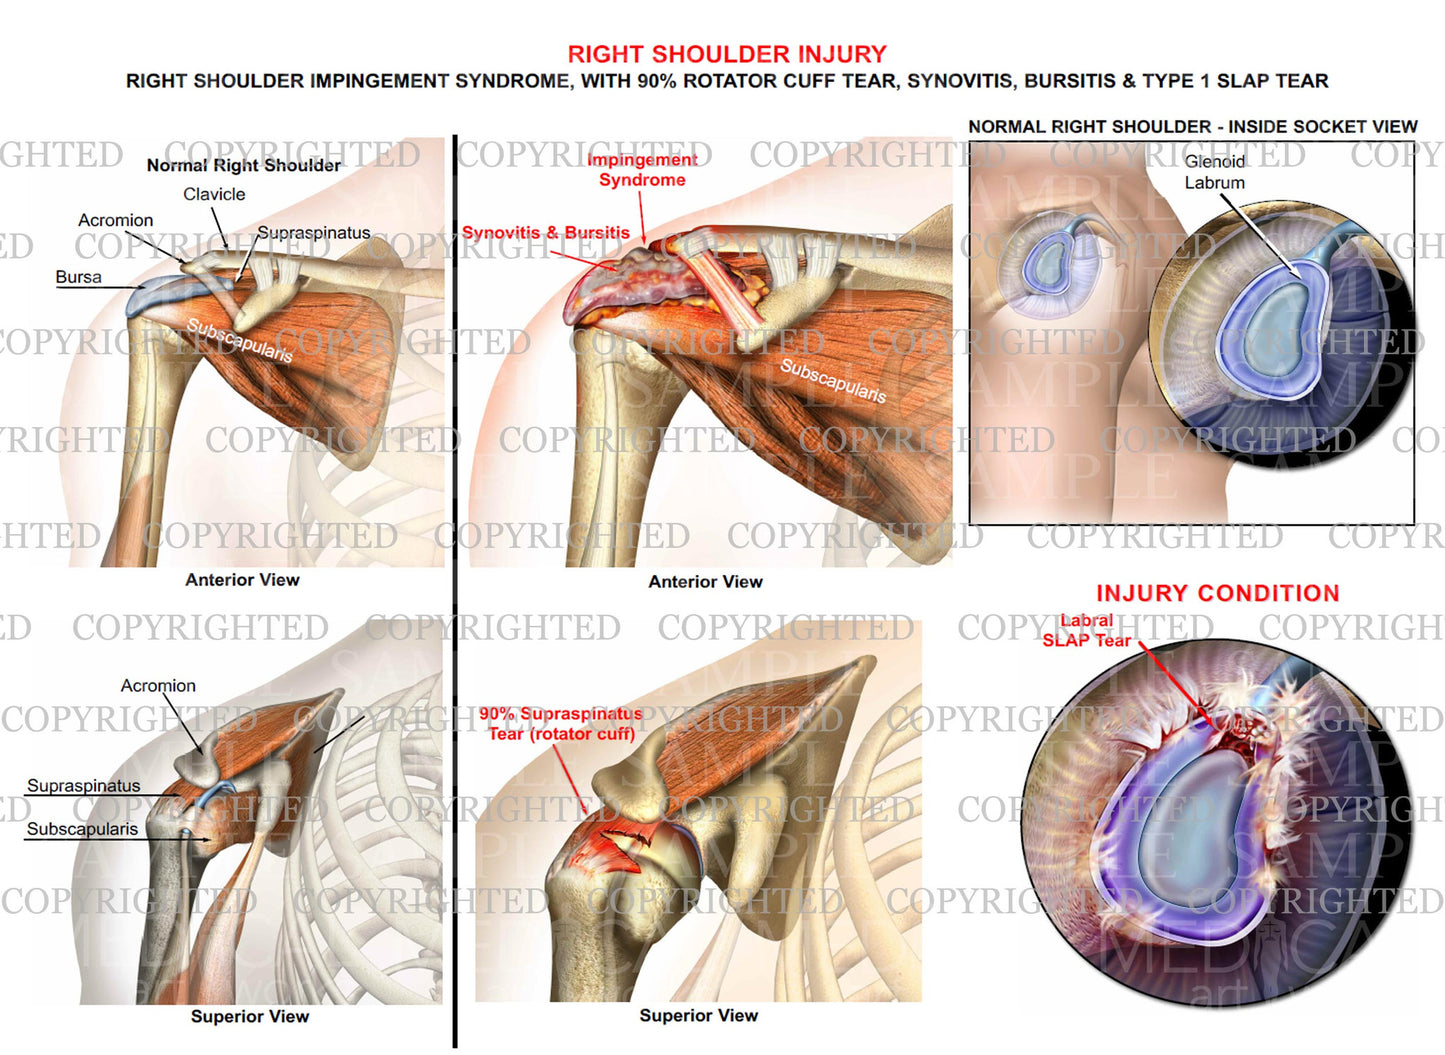 Right shoulder impingement syndrome - RC tear - Slap tear